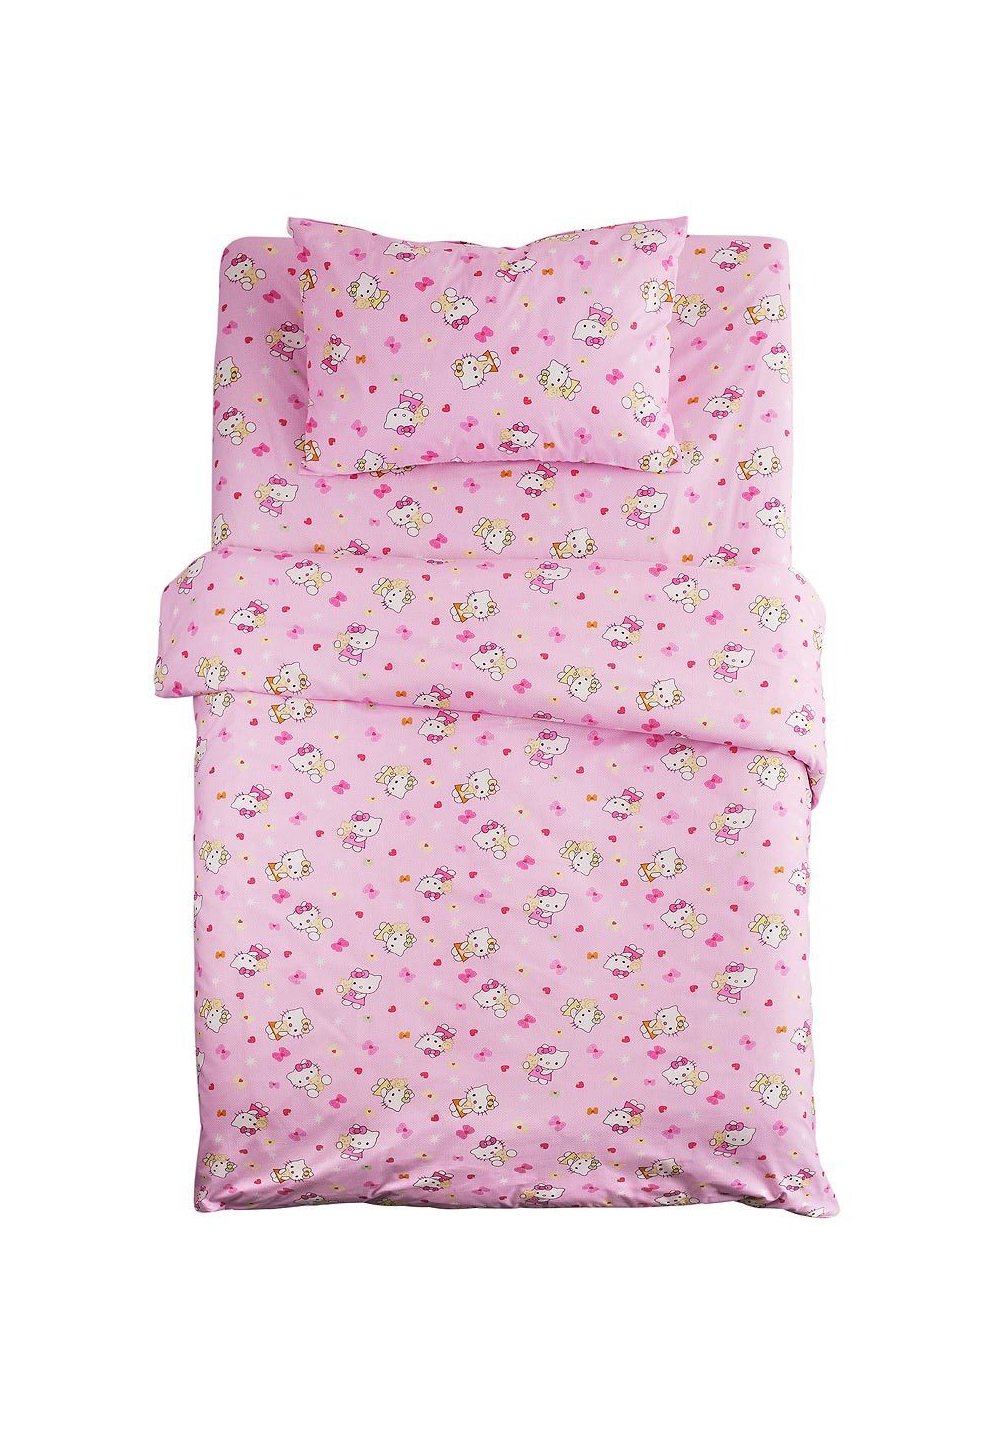 Lenjerie de pat, Hello Kitty roz, 3 piese, 160x200cm Prichindel imagine noua